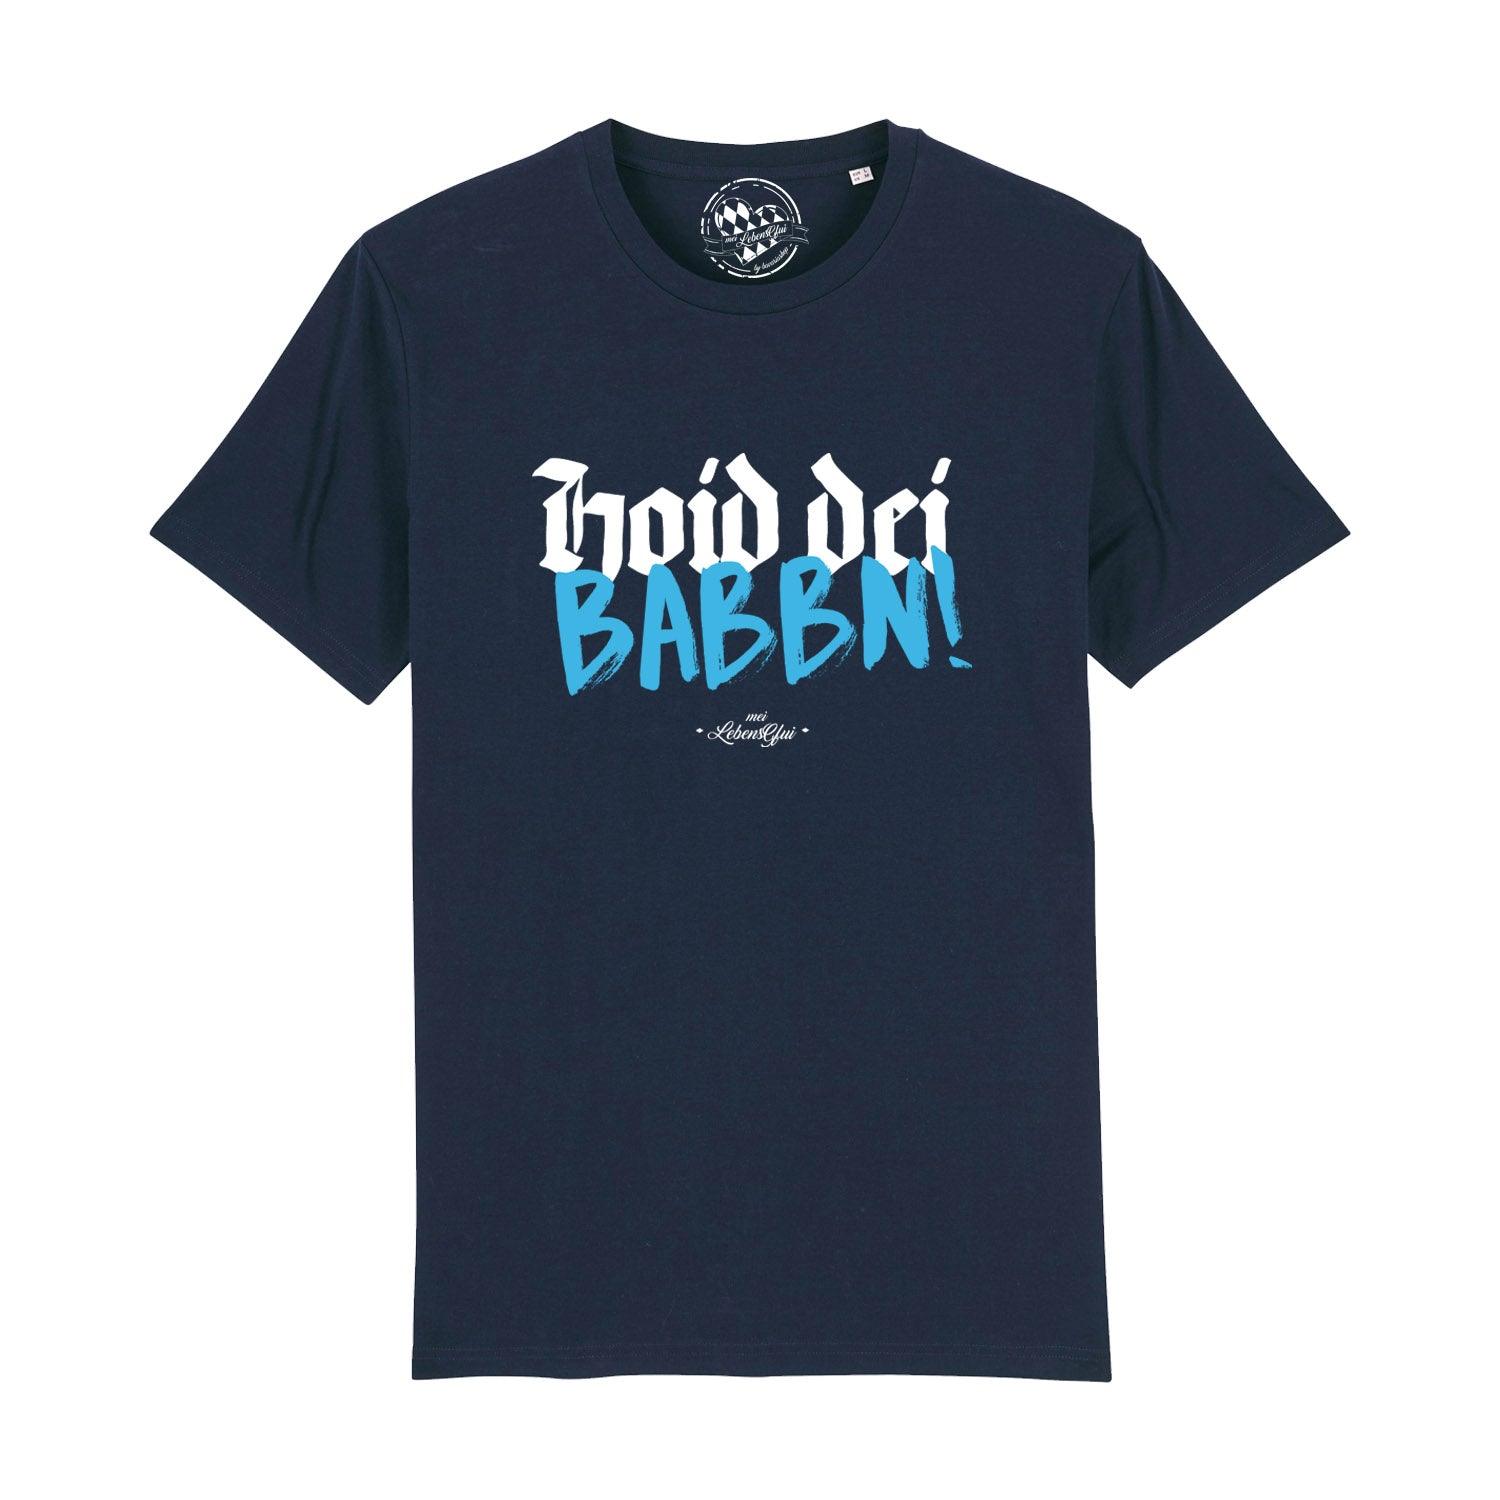 Herren T-Shirt "Hoid dei Babbn" - bavariashop - mei LebensGfui